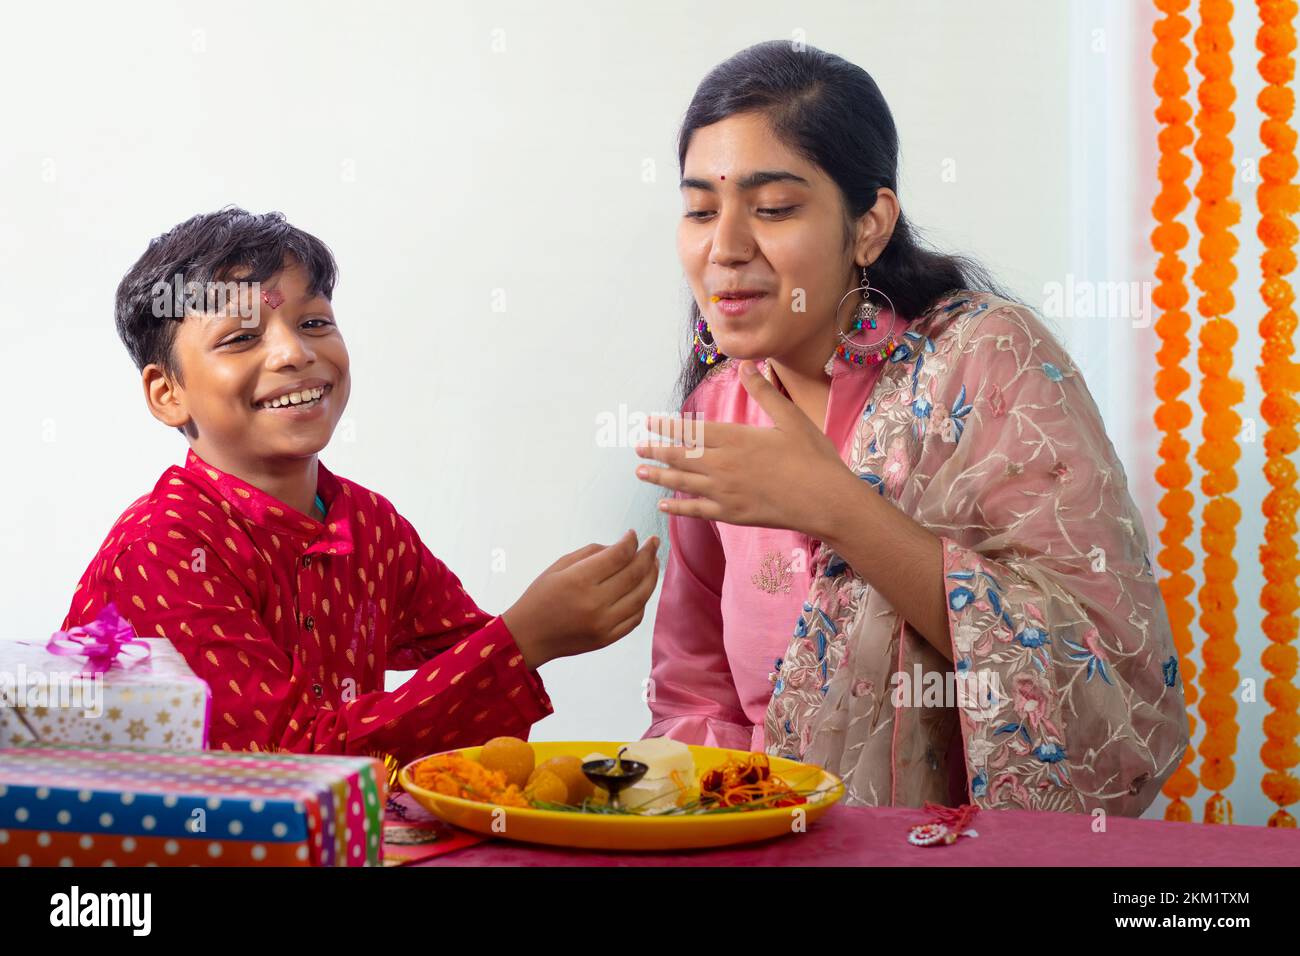 Frère nourrissant des ladoos à sa sœur à l'occasion de Raksha Bandhan Banque D'Images